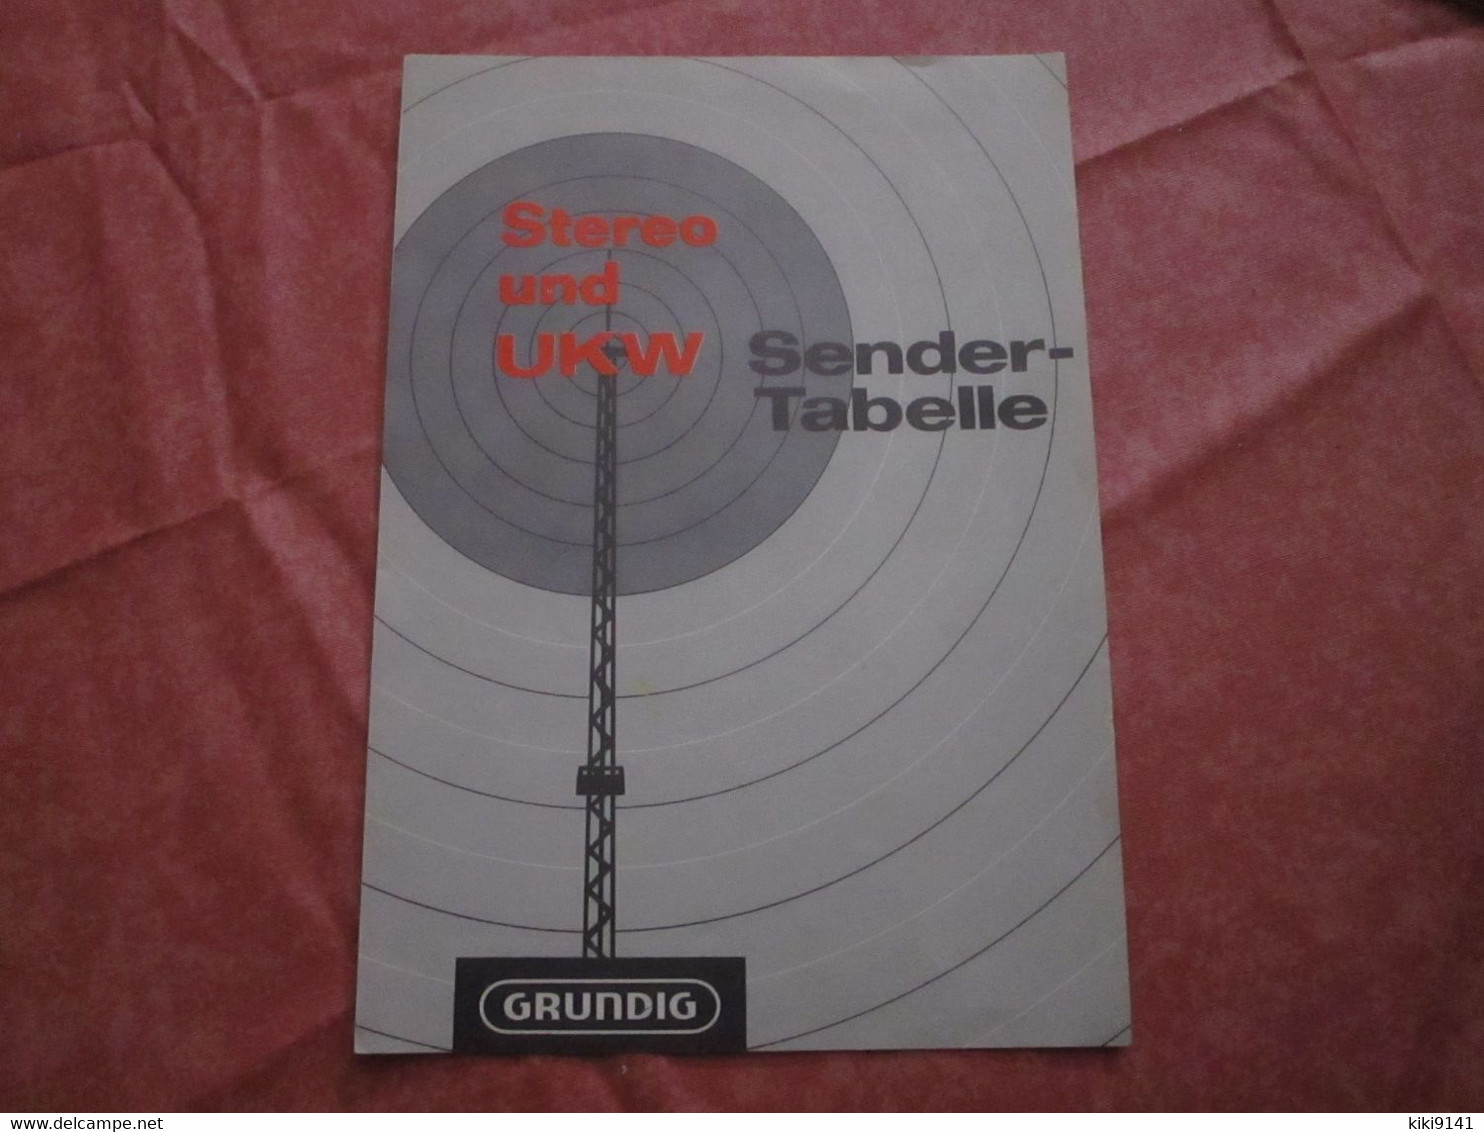 GRUNDING - Stereo Und UKW - Stender-Tabelle - Literature & Schemes